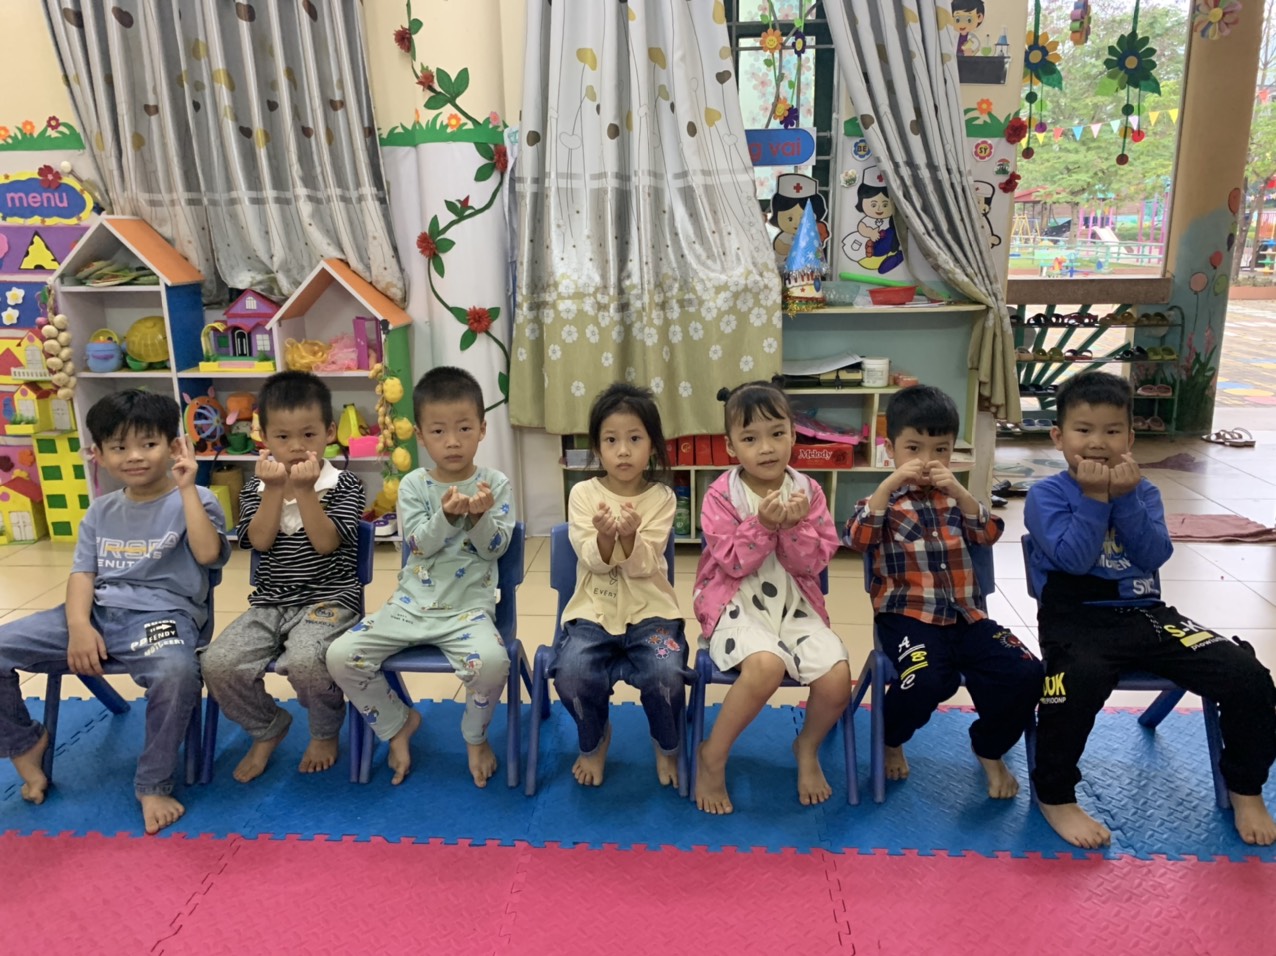 Tiết học diễn xuất của các bé lớp 5 tuổi Trường mầm non Thái Bình